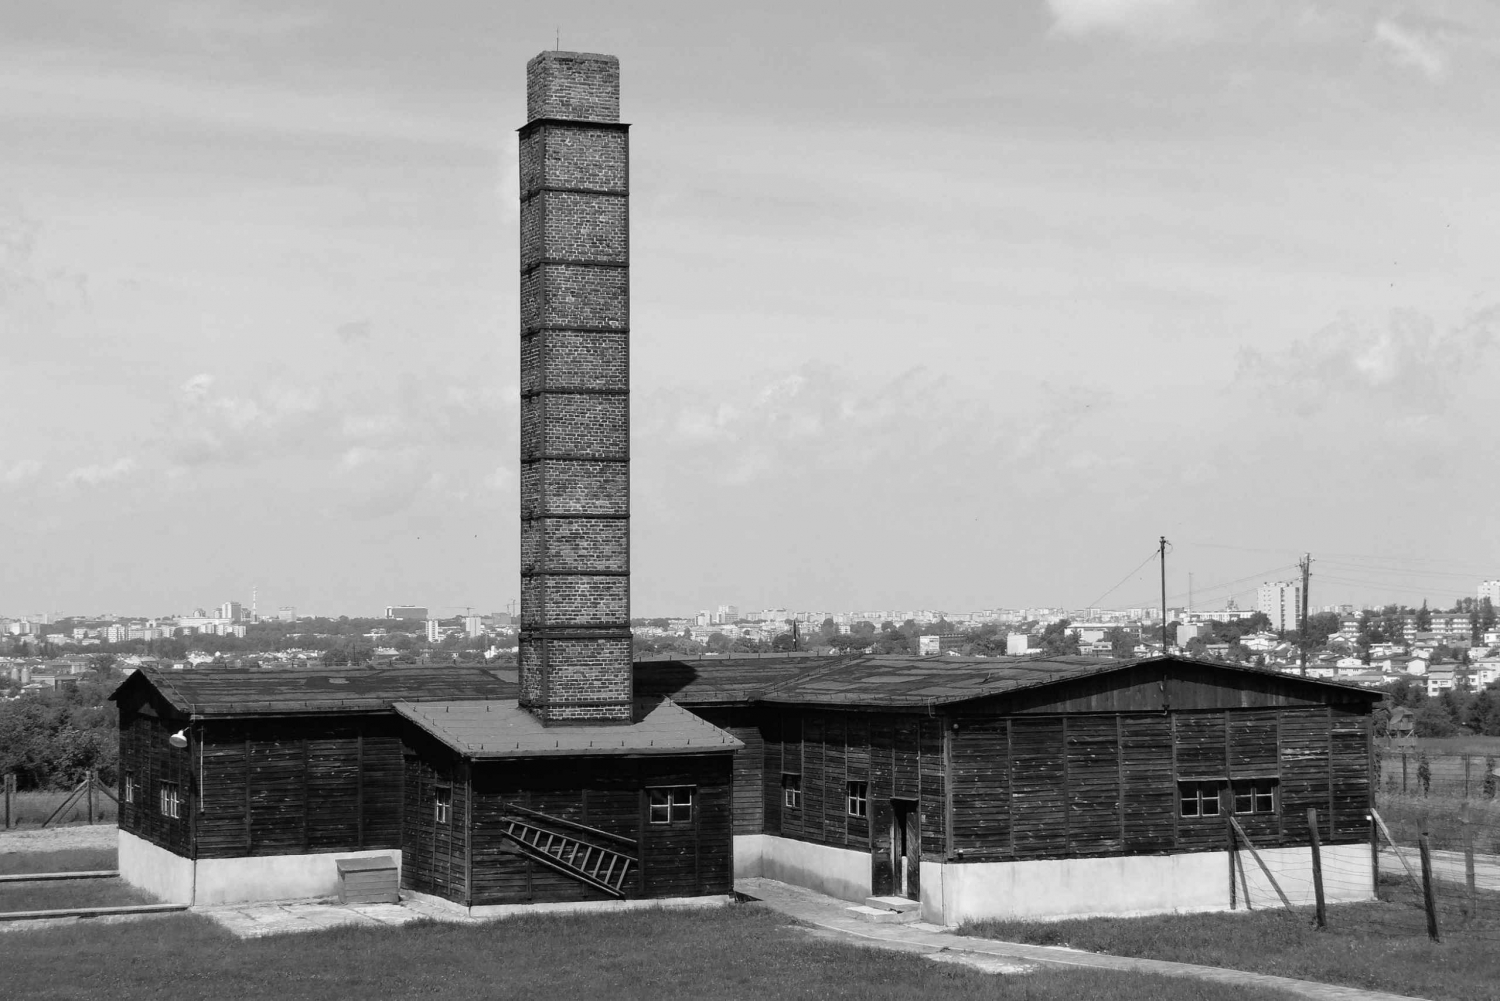 Warszawa: 12-timers privat rundvisning med guide til Majdanek og Lublin